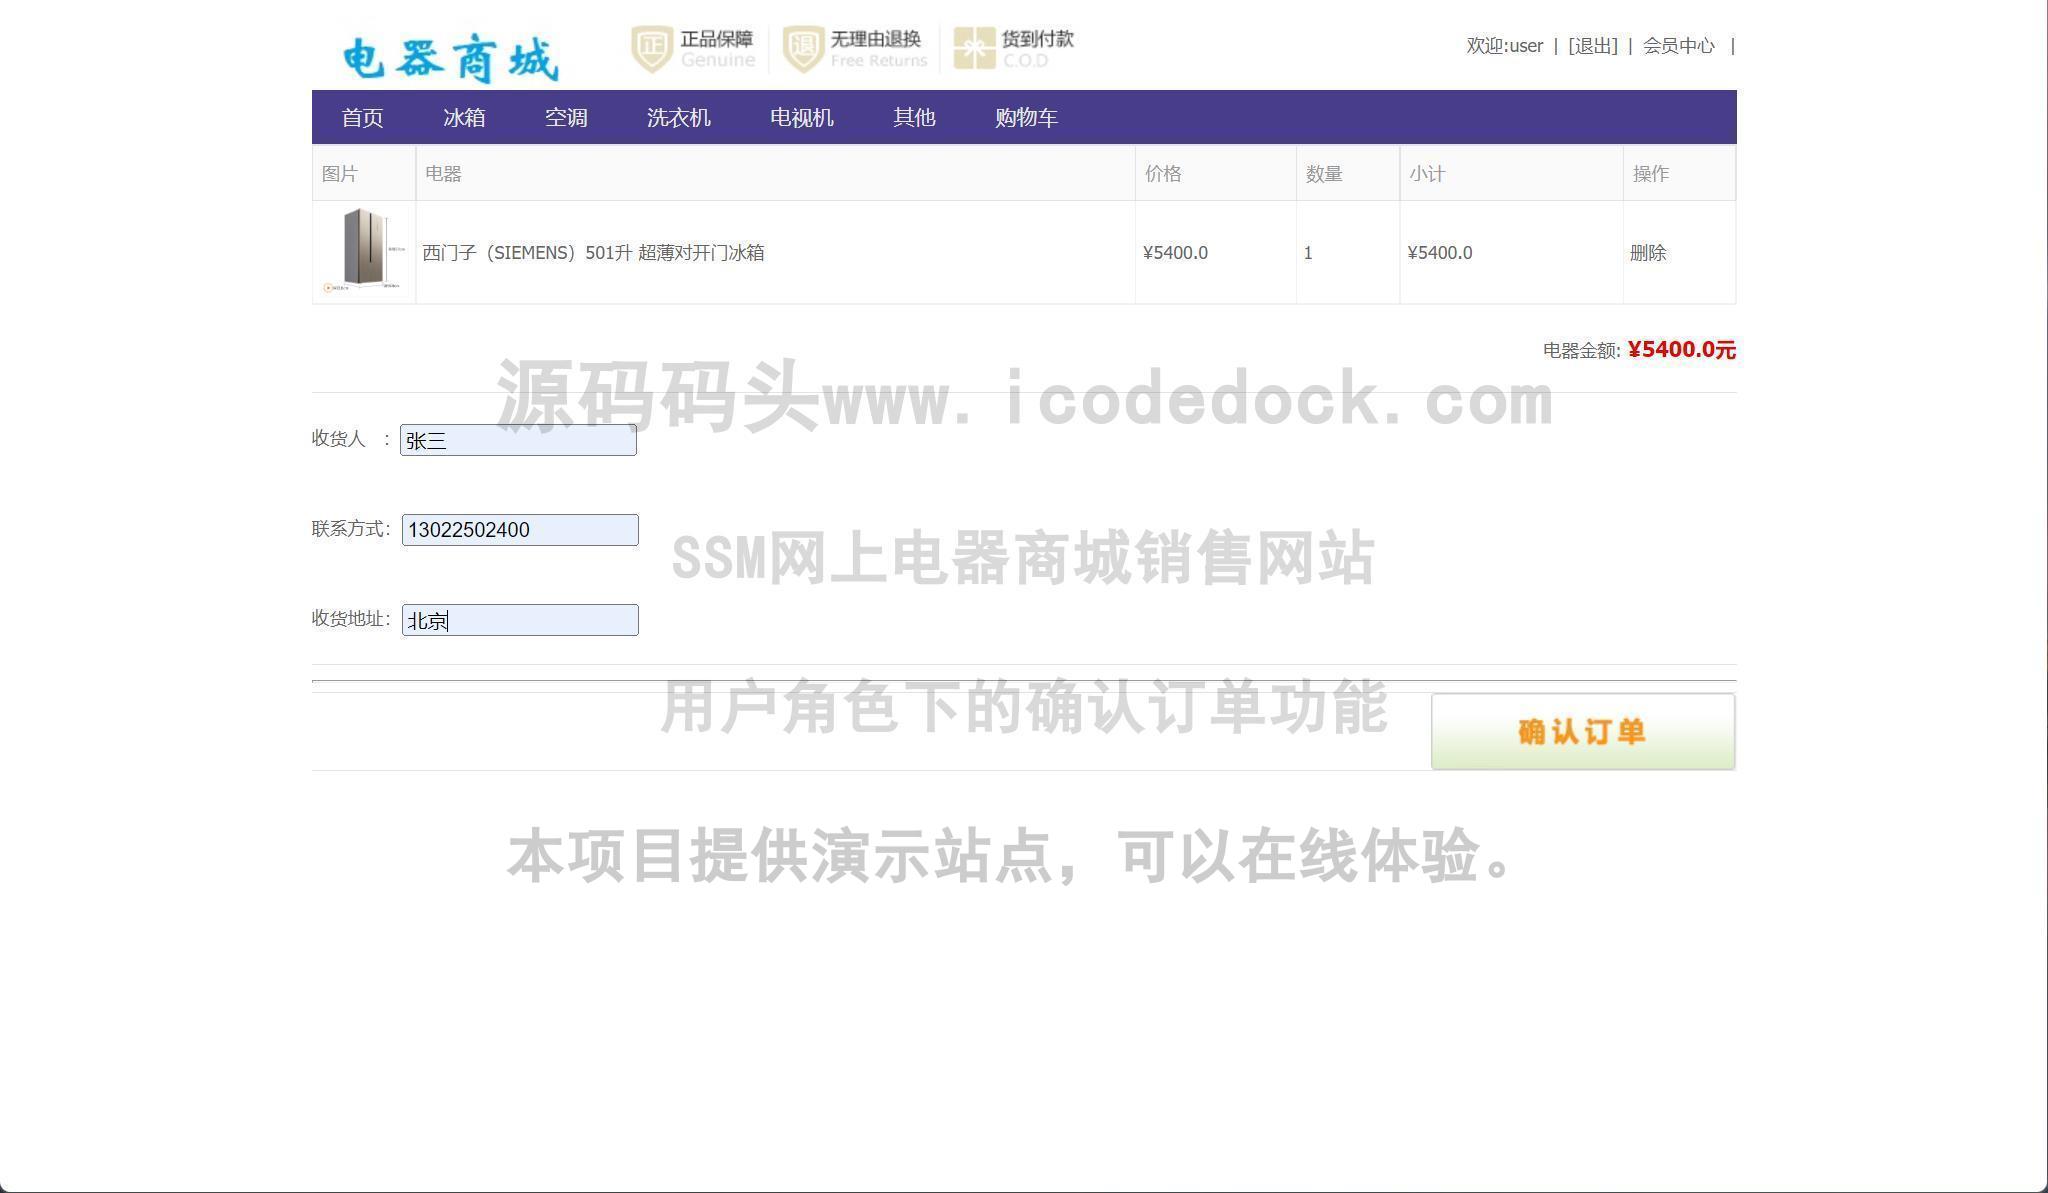 源码码头-SSM网上电器商城销售网站-用户角色-确认订单